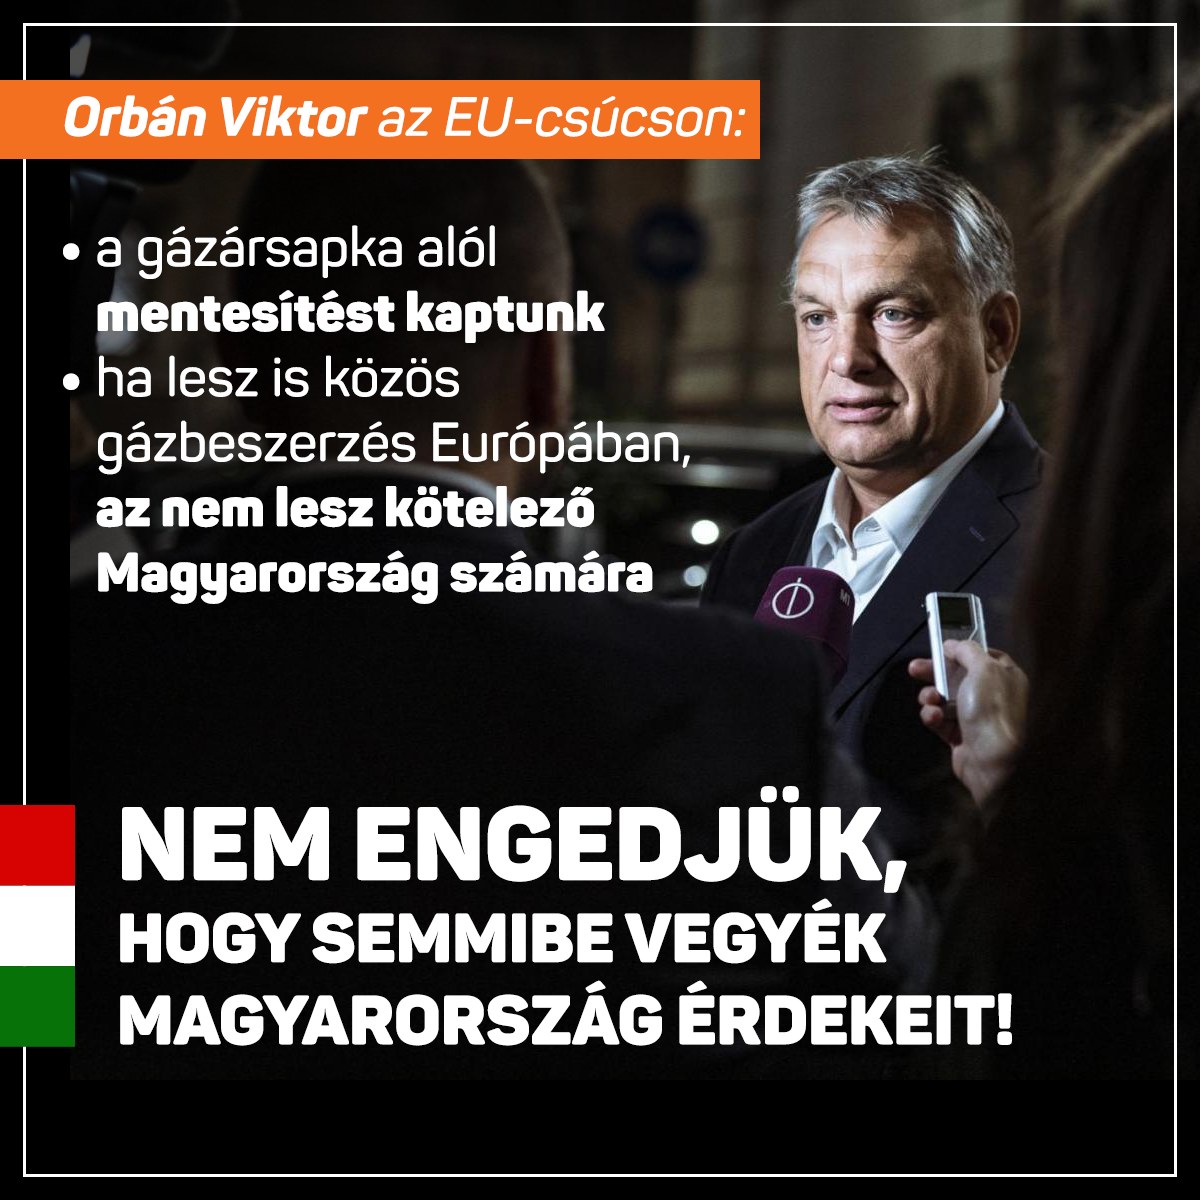 A bizottság energetikai javaslatai jelentették a legnagyobb veszélyt Magyarország számára. Elfogadásukkal azt kockáztattuk volna, hogy néhány nap alatt leállnak a Magyarországra irányuló gázszállítások. Ezt a veszélyt ma sikeresen elhárítottuk – írta Orbán Viktor a Facebook-oldalán.